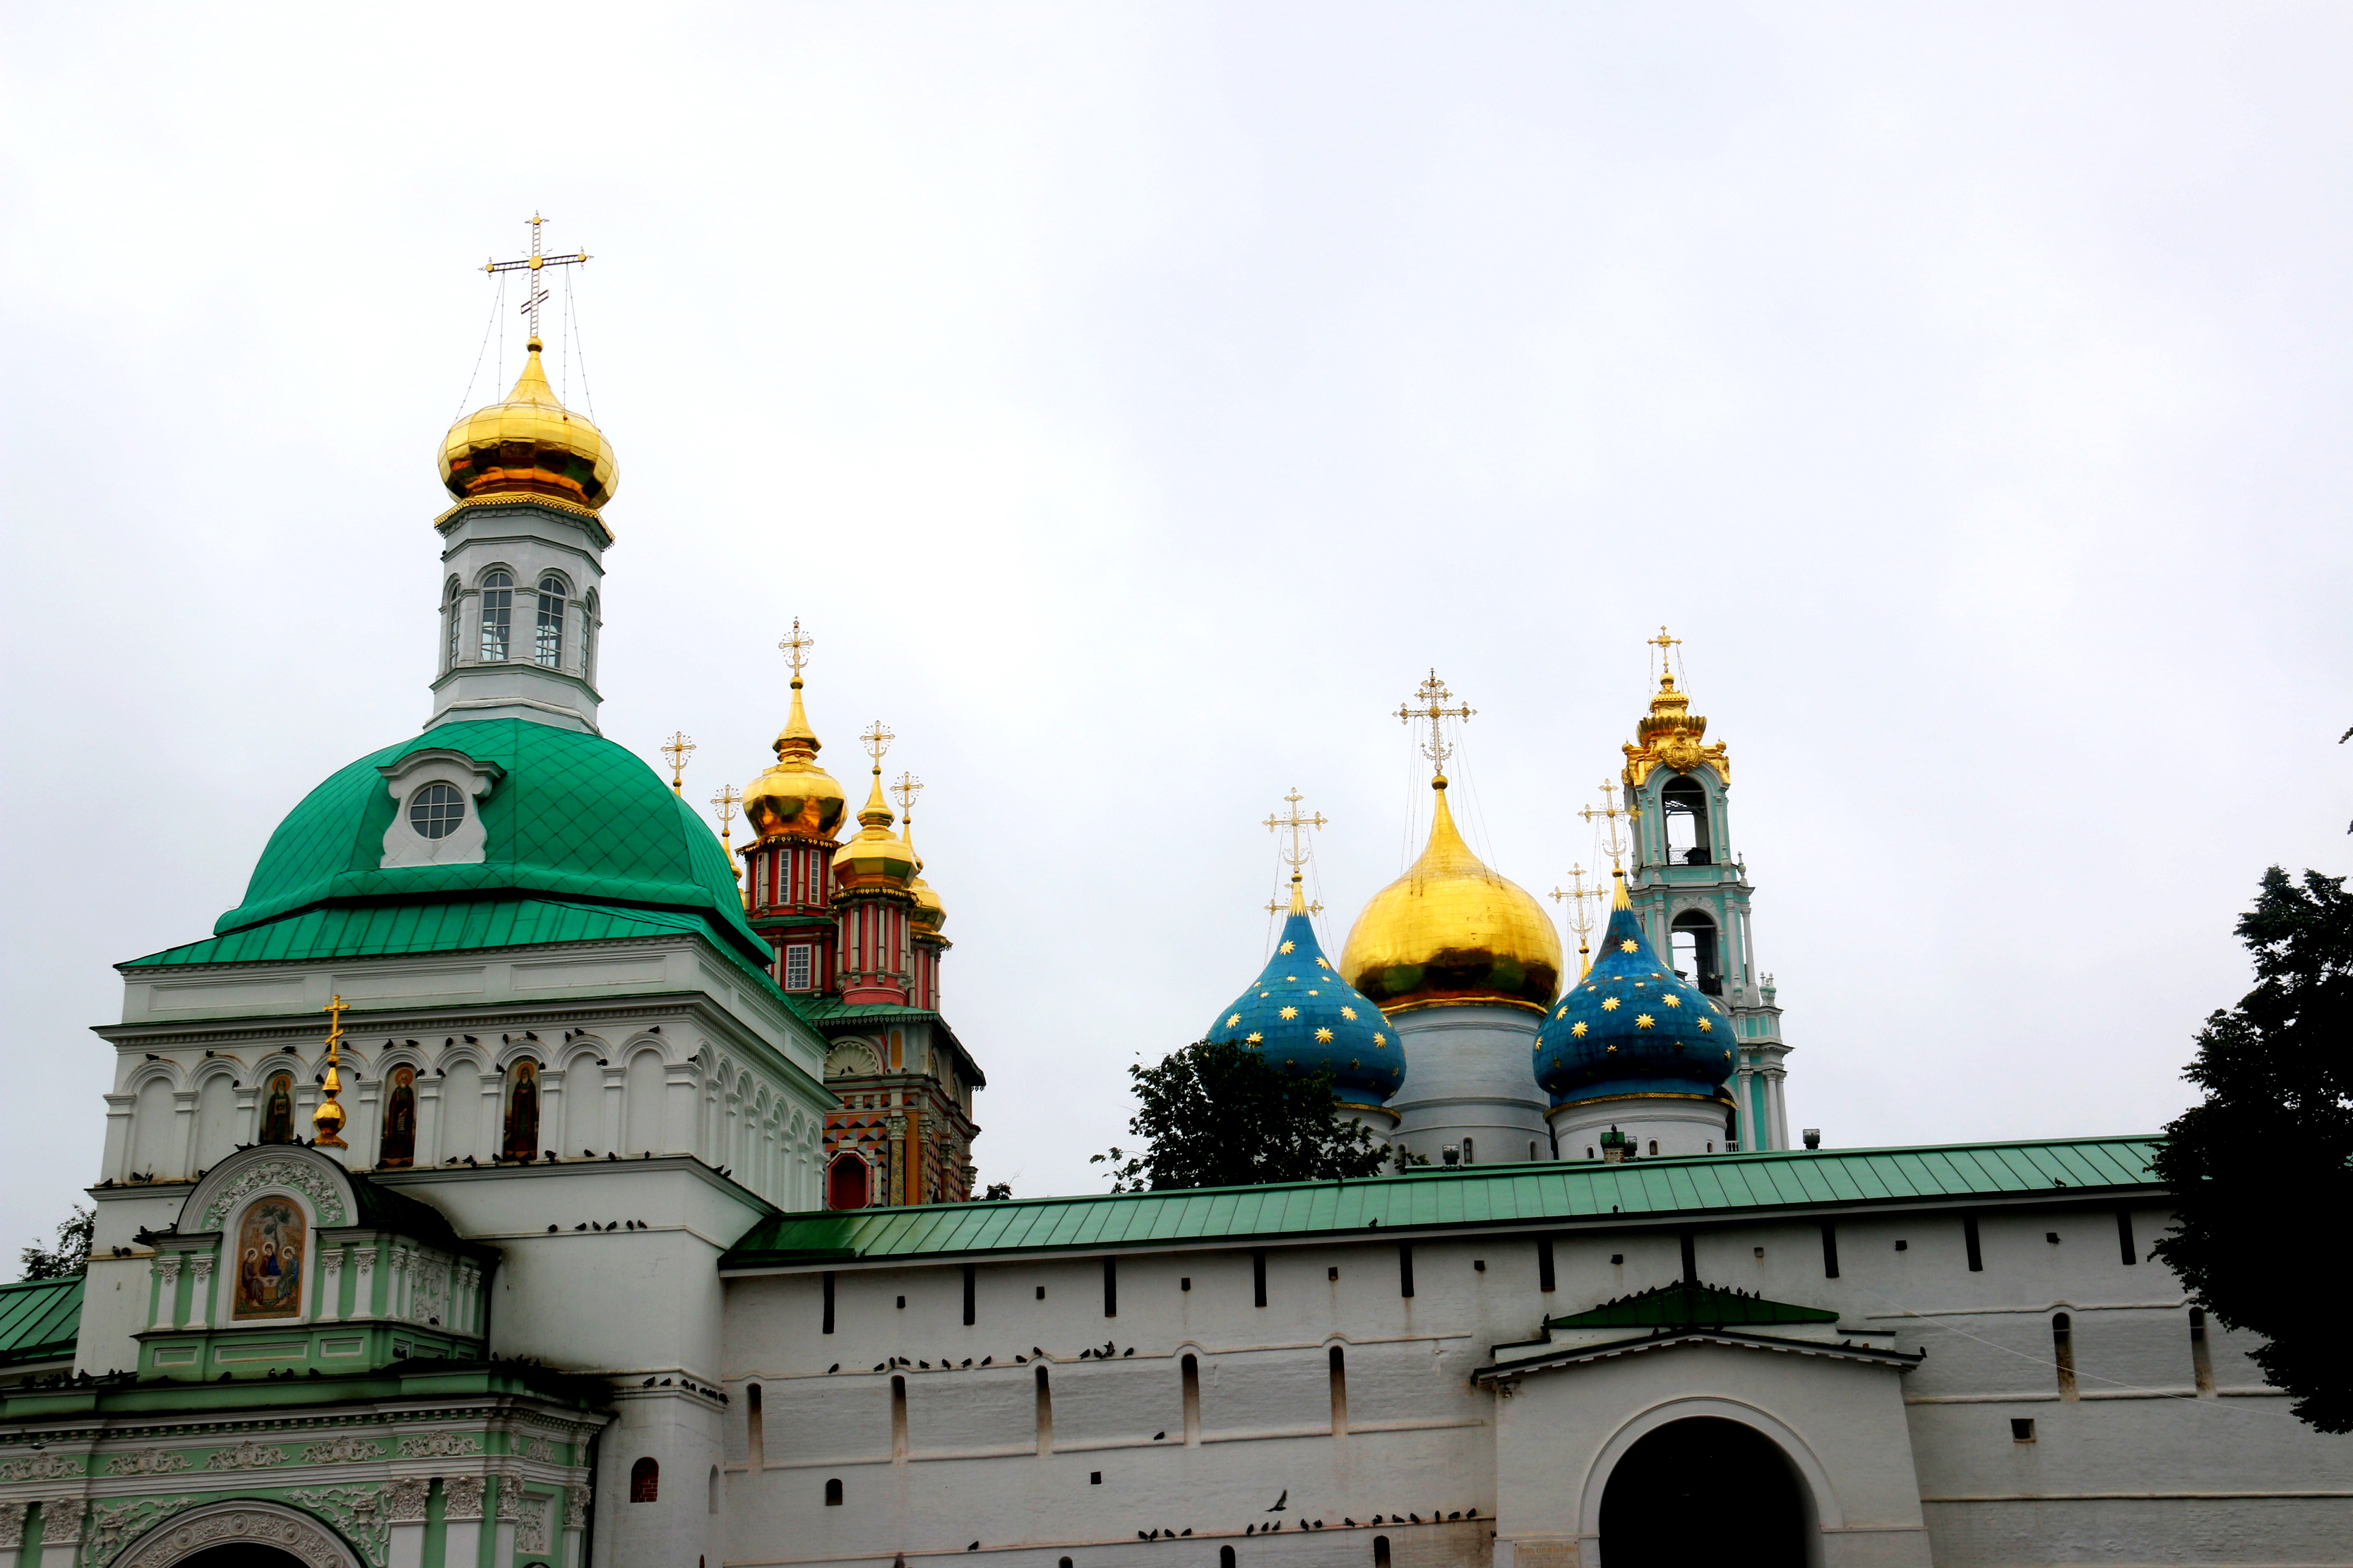 谢尔盖耶夫镇又名为扎戈尔斯克，是莫斯科的卫星城市之一，建成于14世纪，位于莫斯科市区以北71公里，是